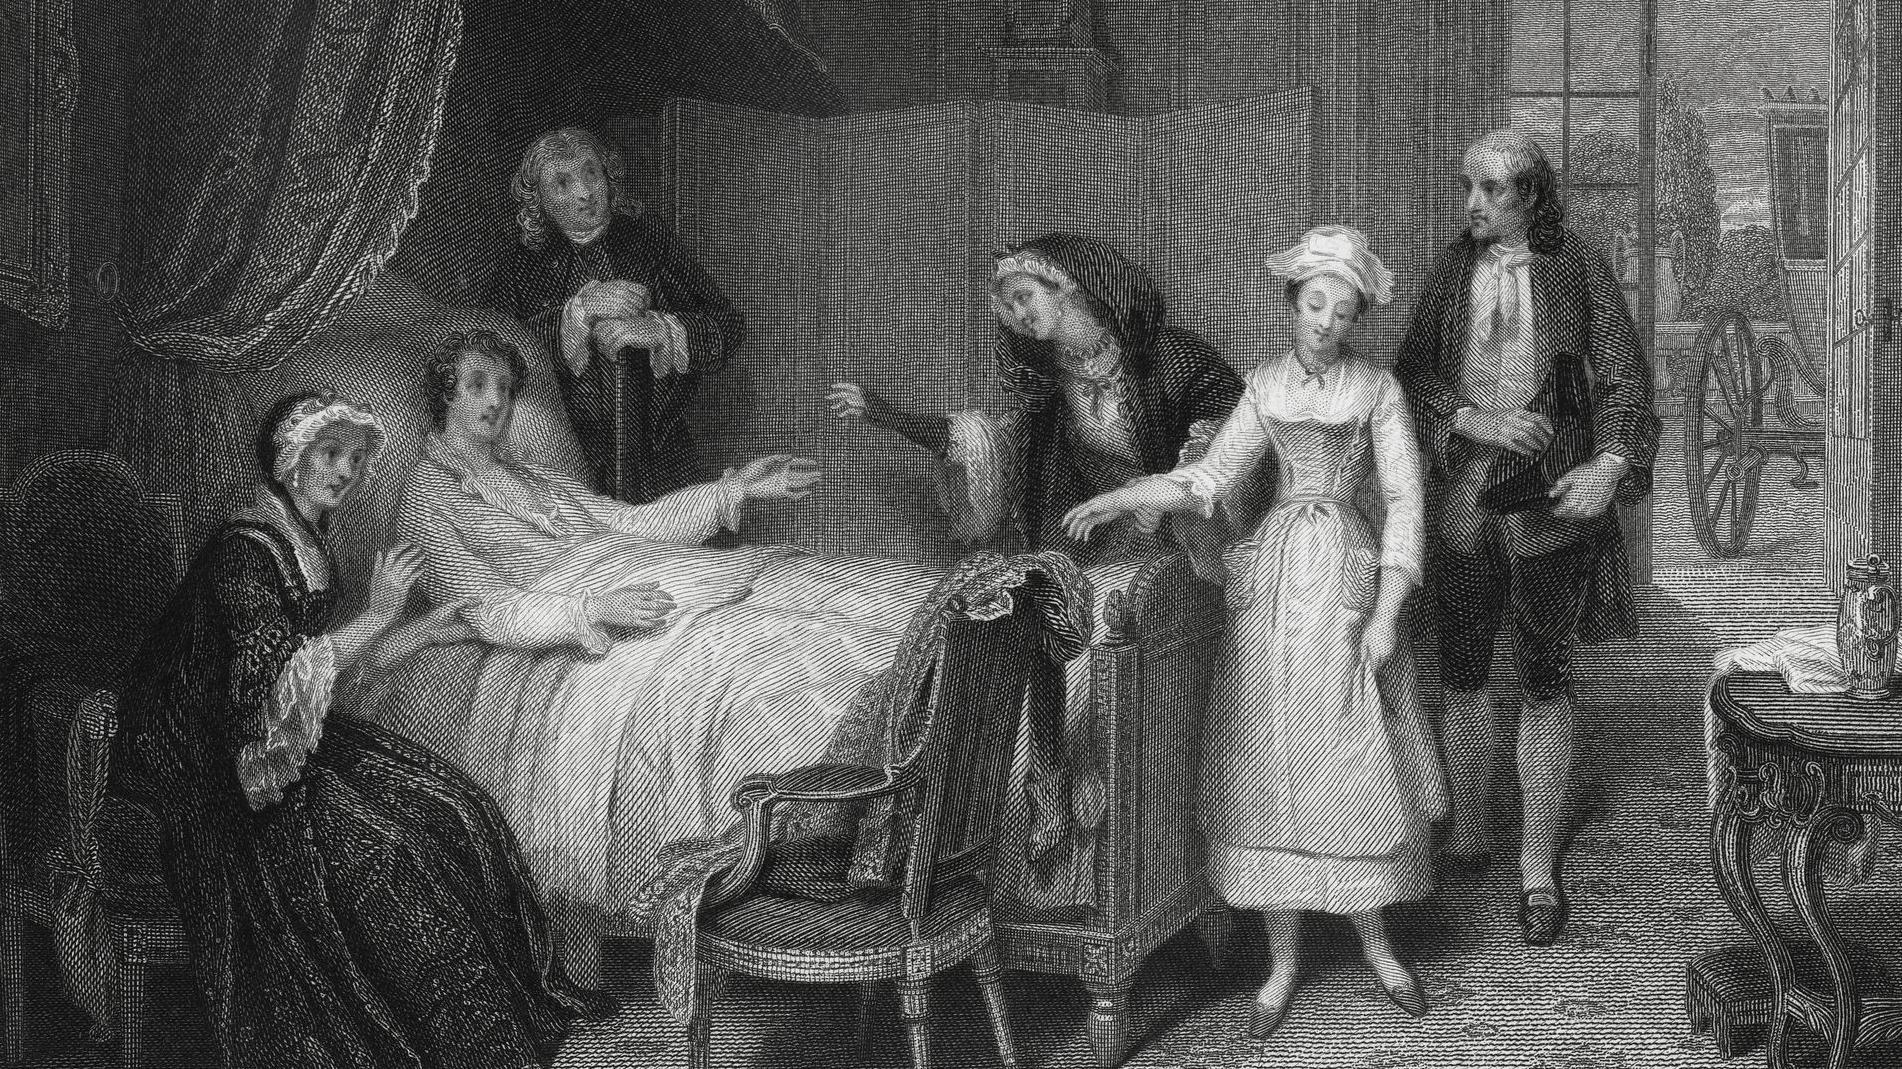 Un hombre recibe la visita de mujeres mientras está tendiedo en su cama